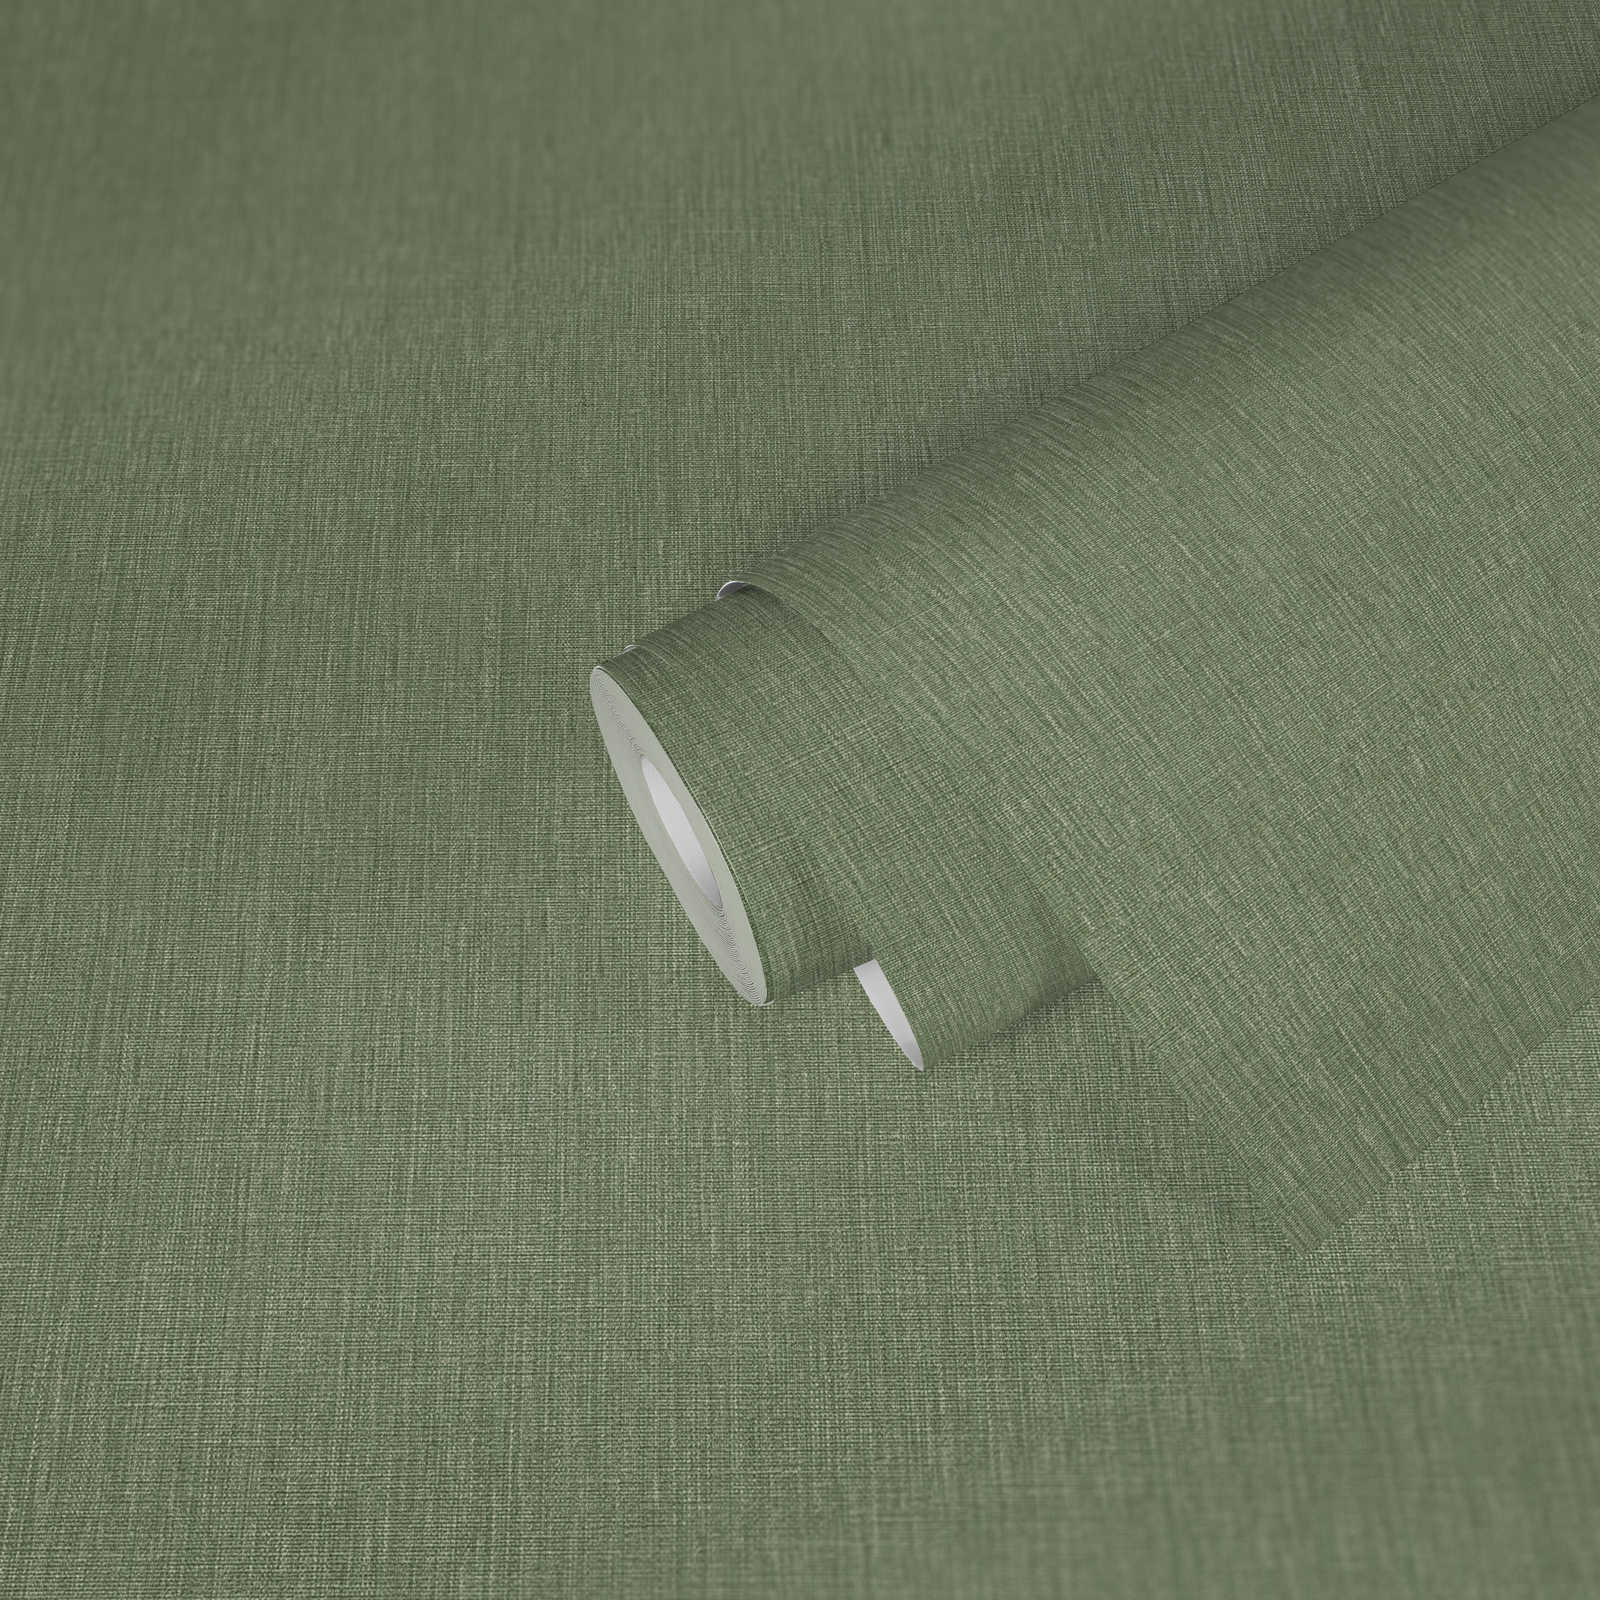             Leicht strukturierte Vliestapete in Textiloptik – Grün
        